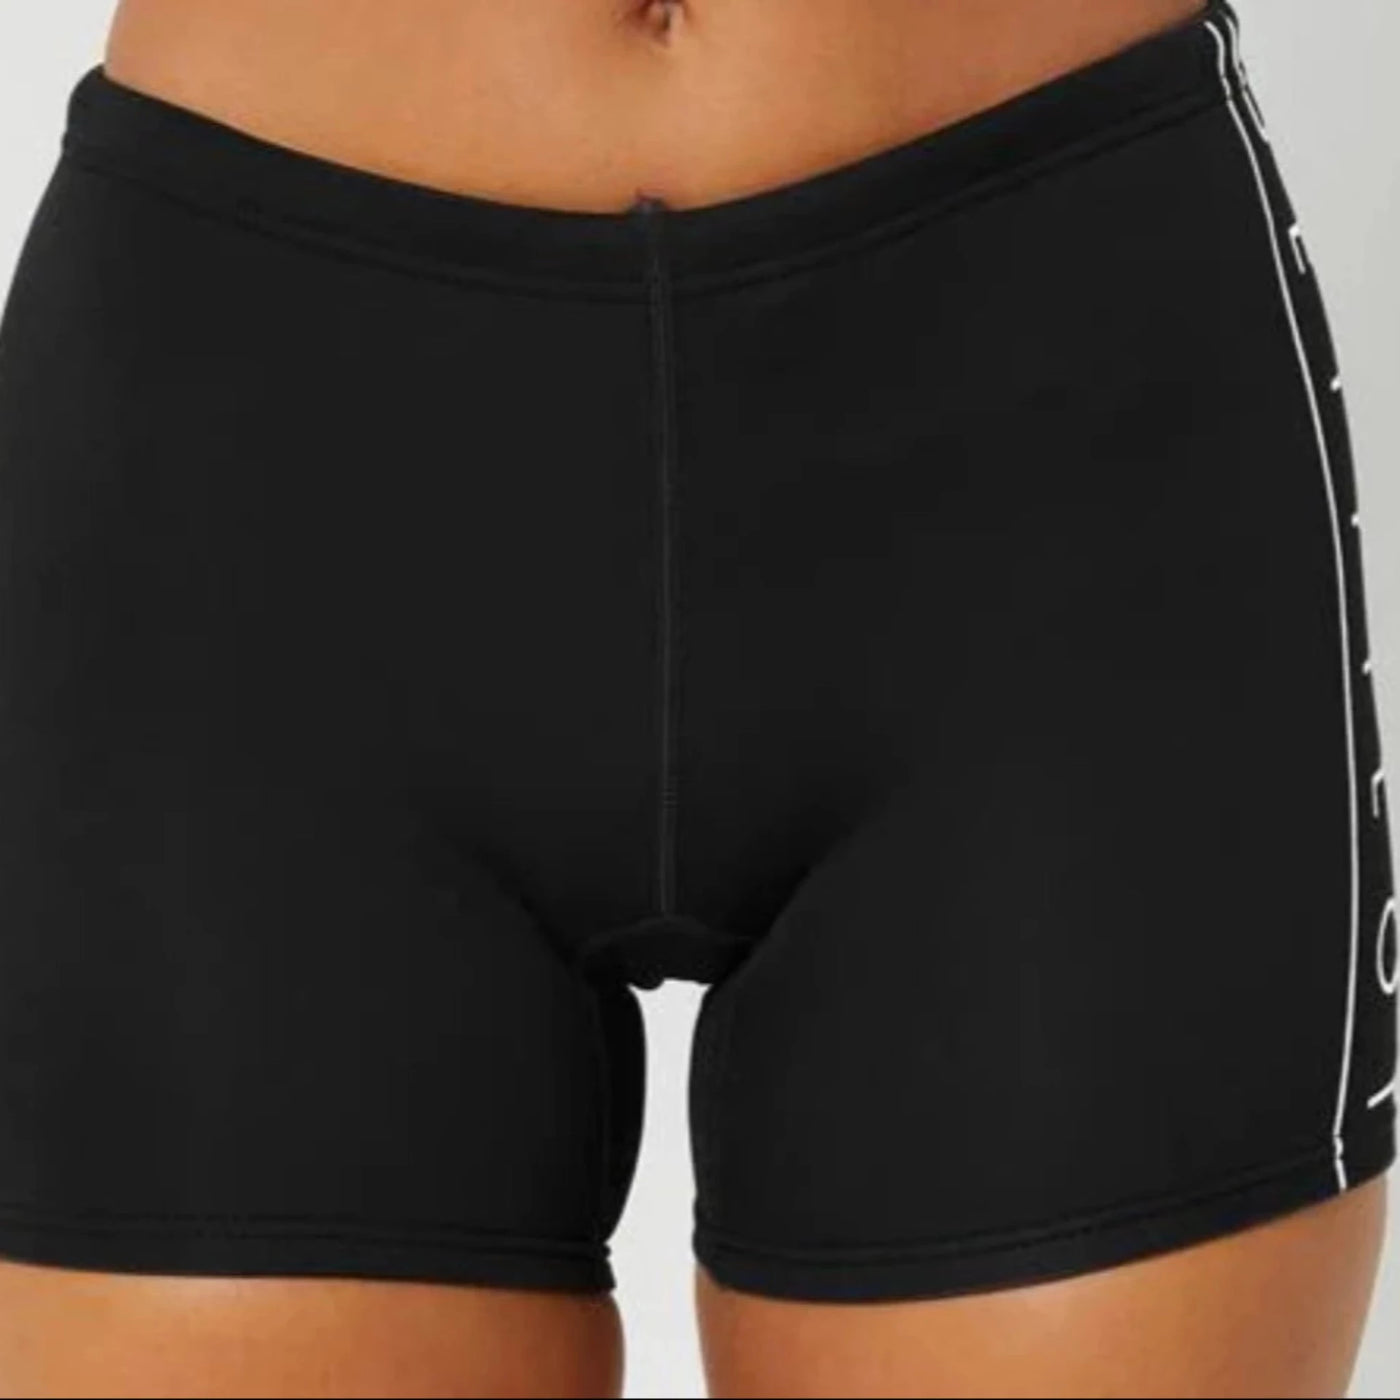 Jetpilot Women's Cause 5" Wetsuit Shorts